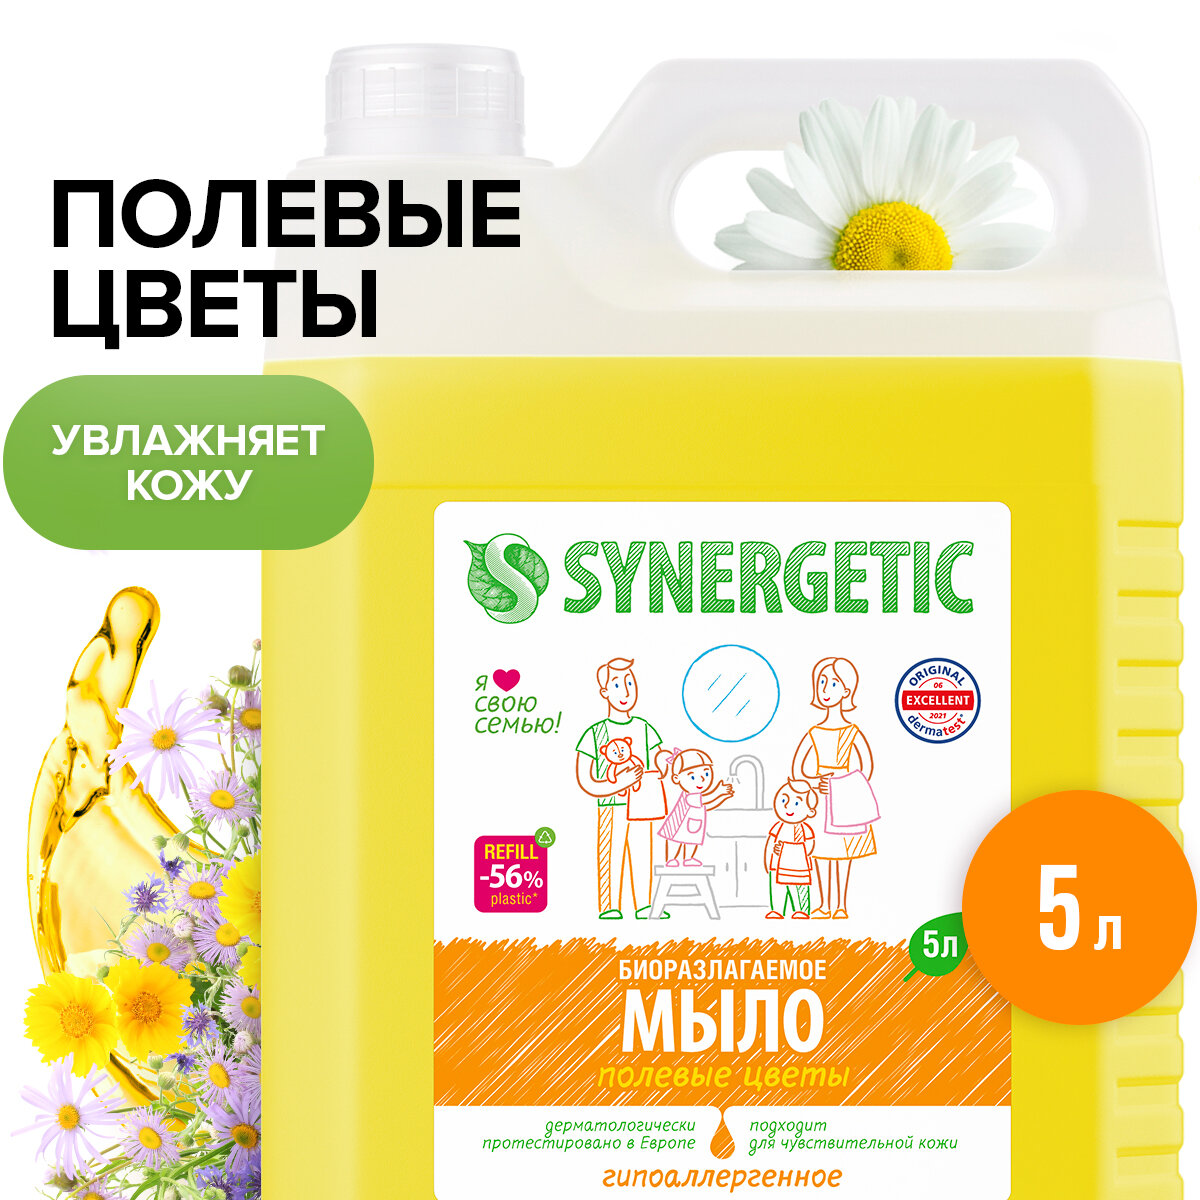 Жидкое мыло SYNERGETIC "Полевые цветы" с эффектом увлажнения, гипоаллергенное, 5л (литров)